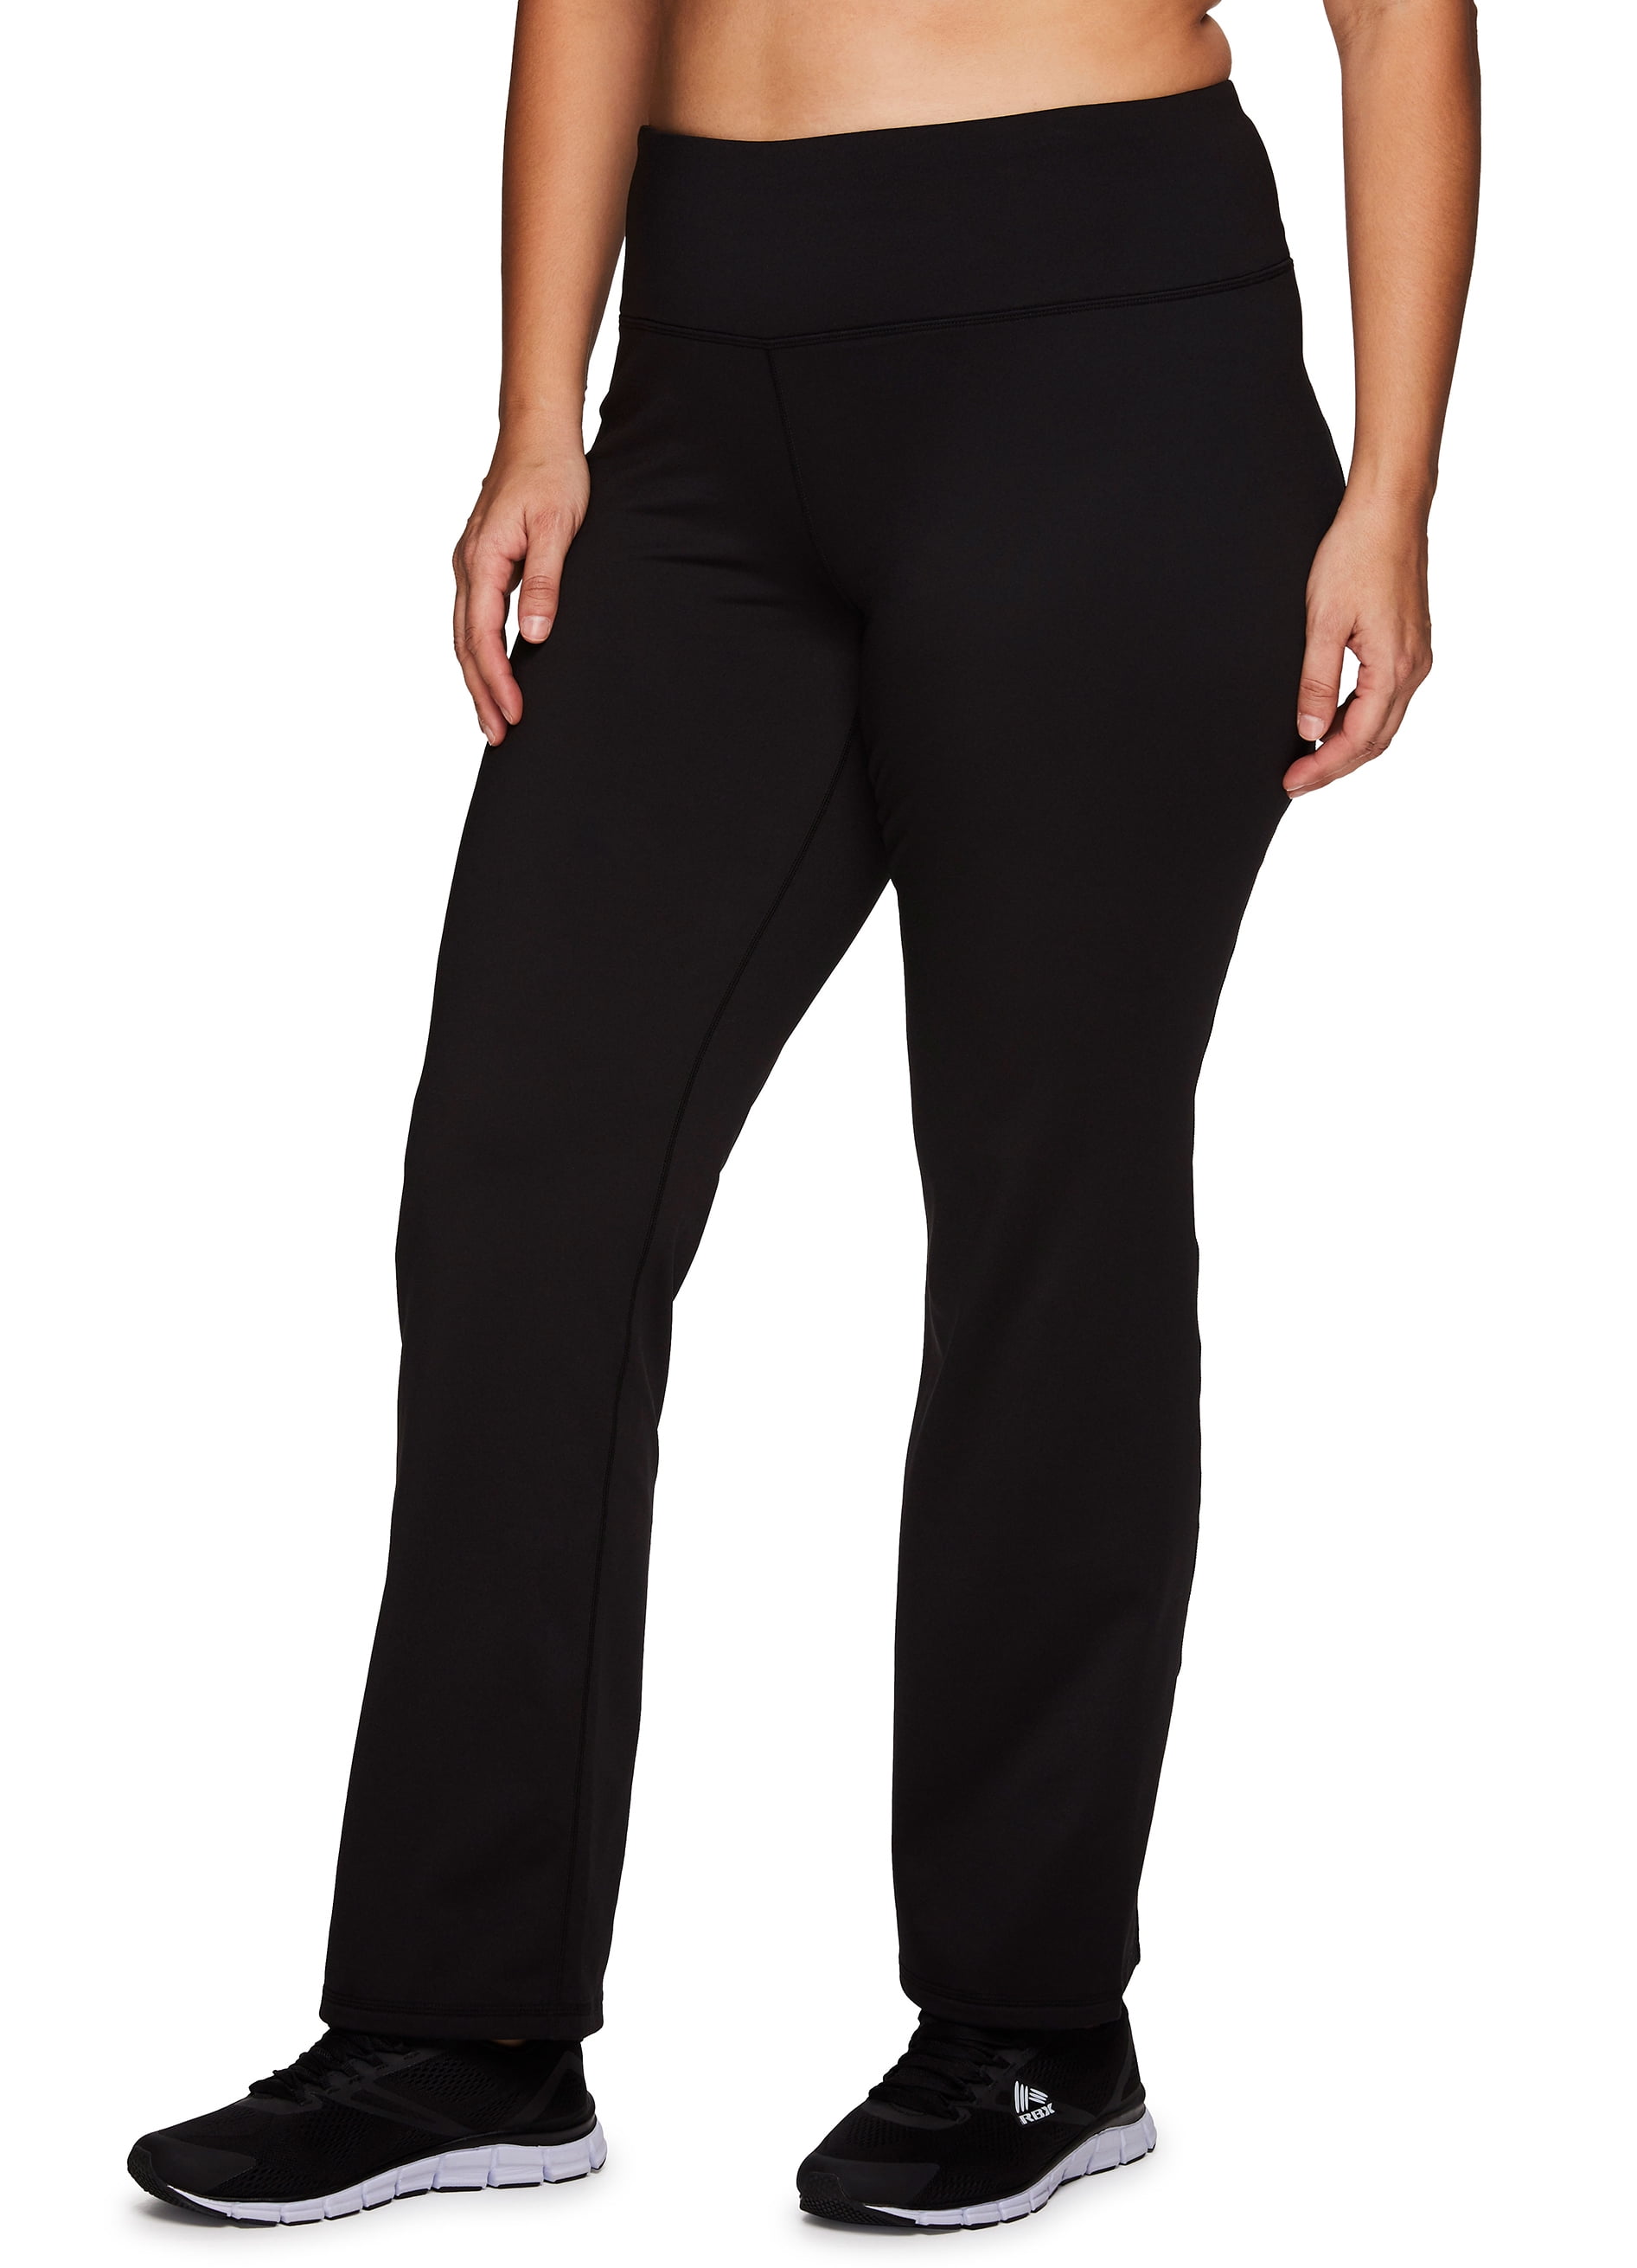 Klasseværelse afkom Forlænge RBX Active Women's Plus Size Boot Cut Fleece Lined Yoga Pants with Pocket -  Walmart.com